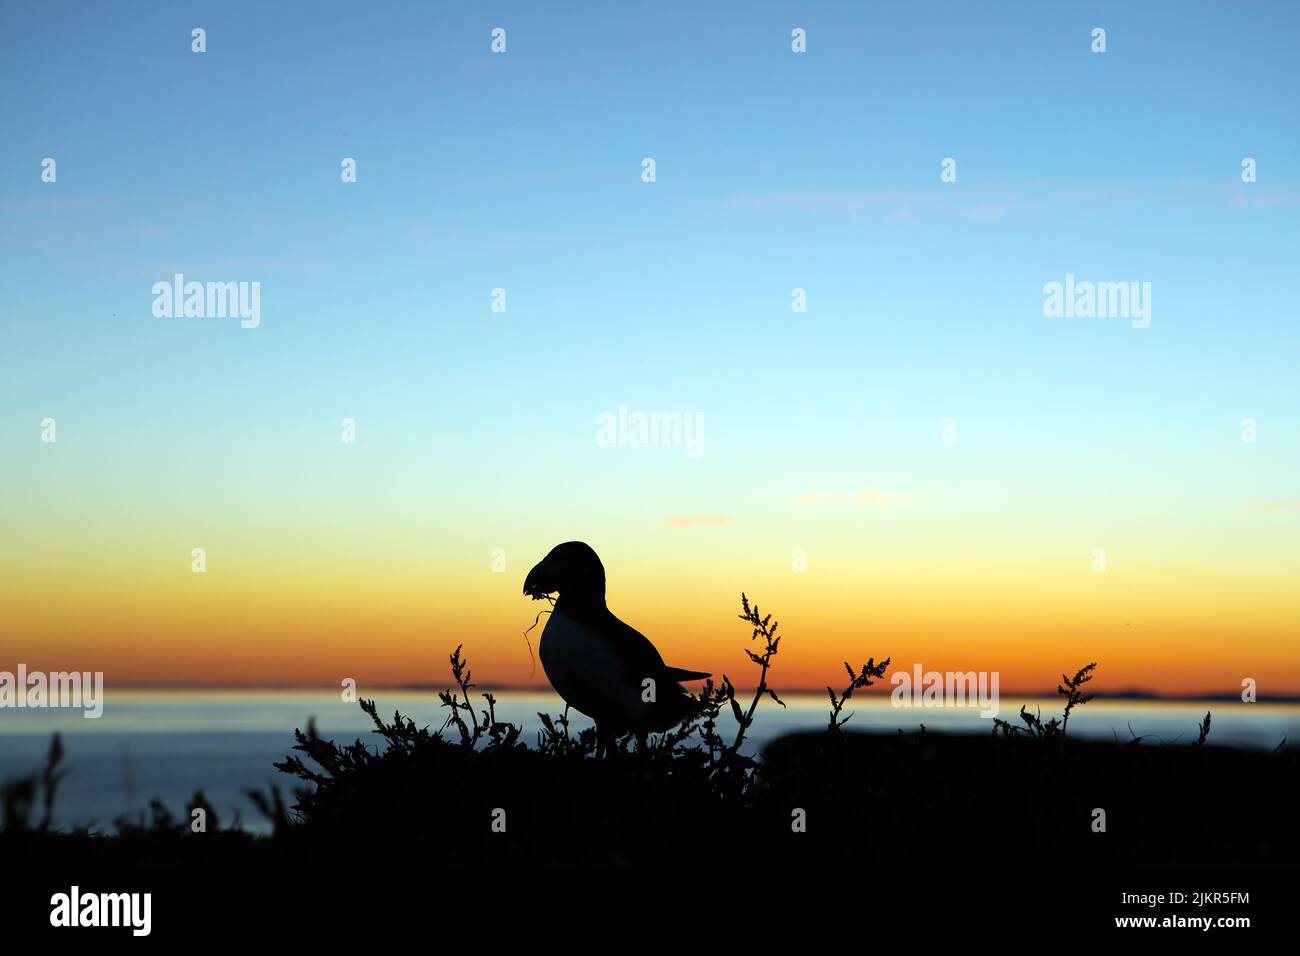 Un macareux qui s'occupe de la collecte de matériel de nidification est silhoueté contre le coucher de soleil sur Lunga dans les îles Treshnish, Hébrides intérieures d'Écosse Banque D'Images